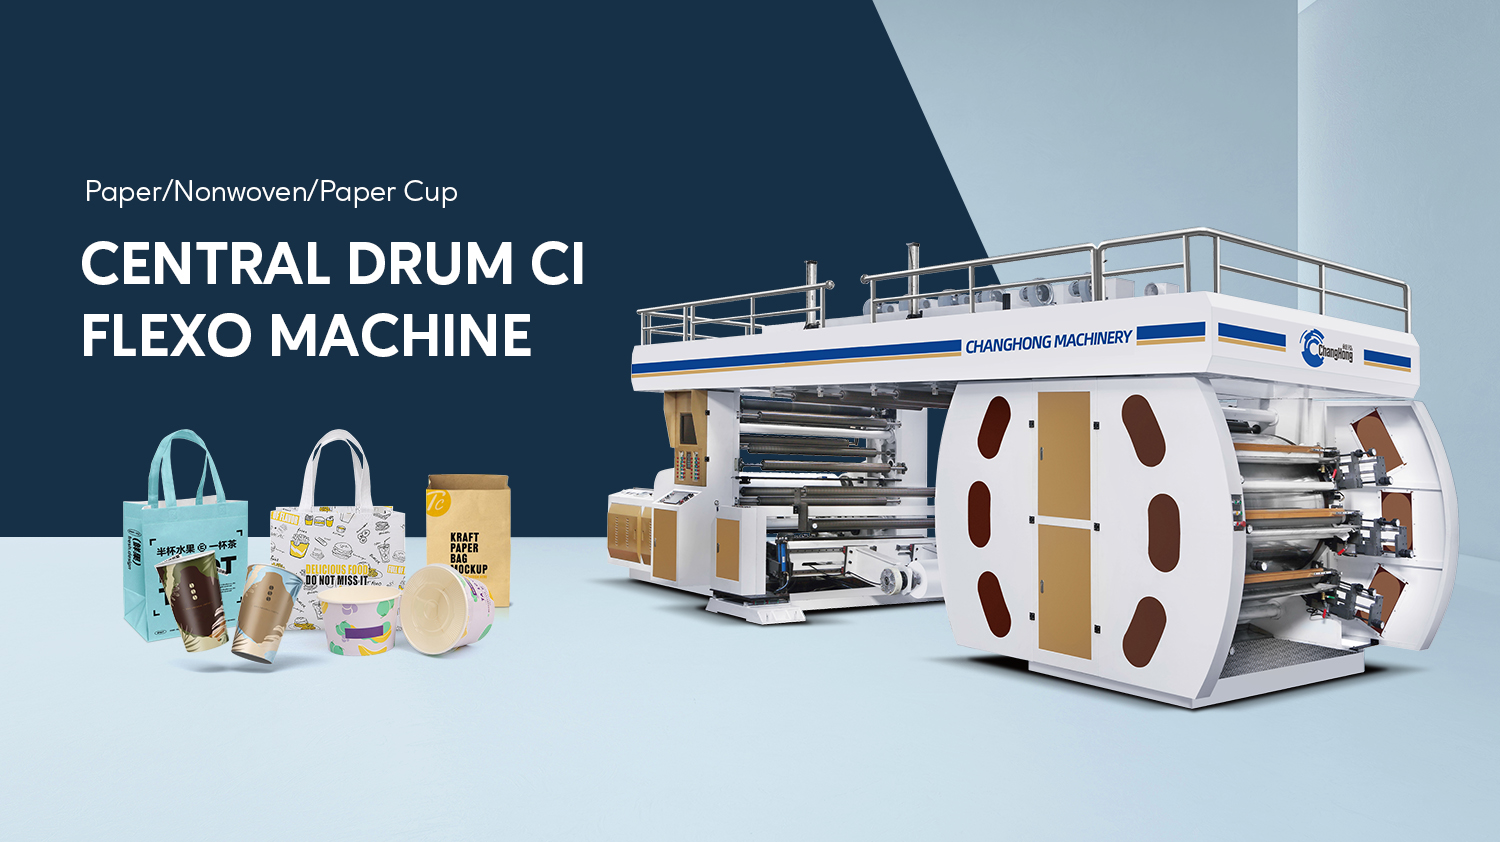 पेपर कप सीआई फ्लेक्सोग्राफिक प्रिंटिंग मशीन